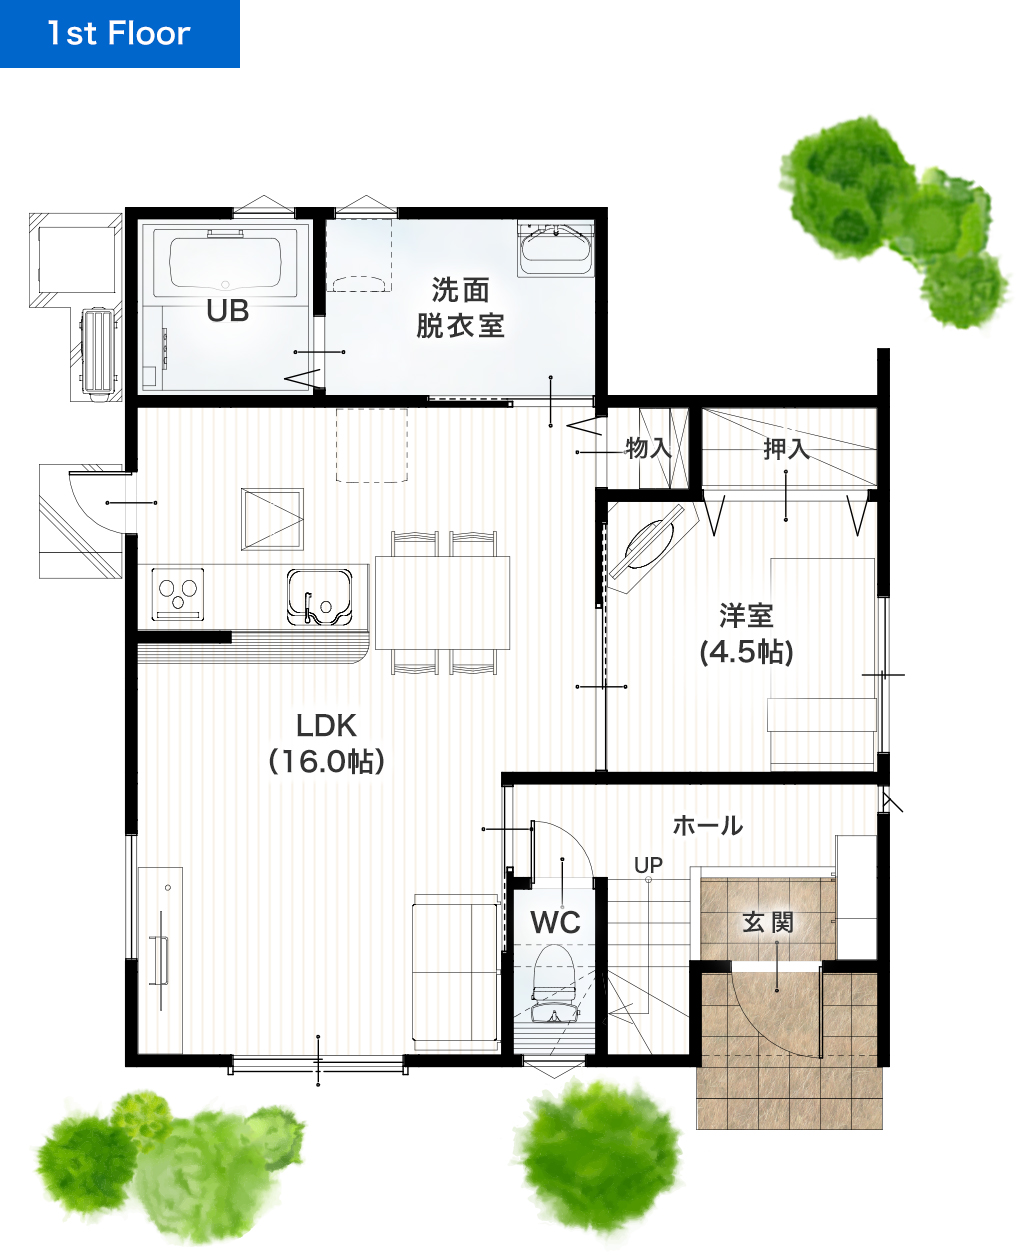 熊本市東区小峯1丁目1号地 28坪 4LDK 建売・一戸建ての新築物件 1階間取り図